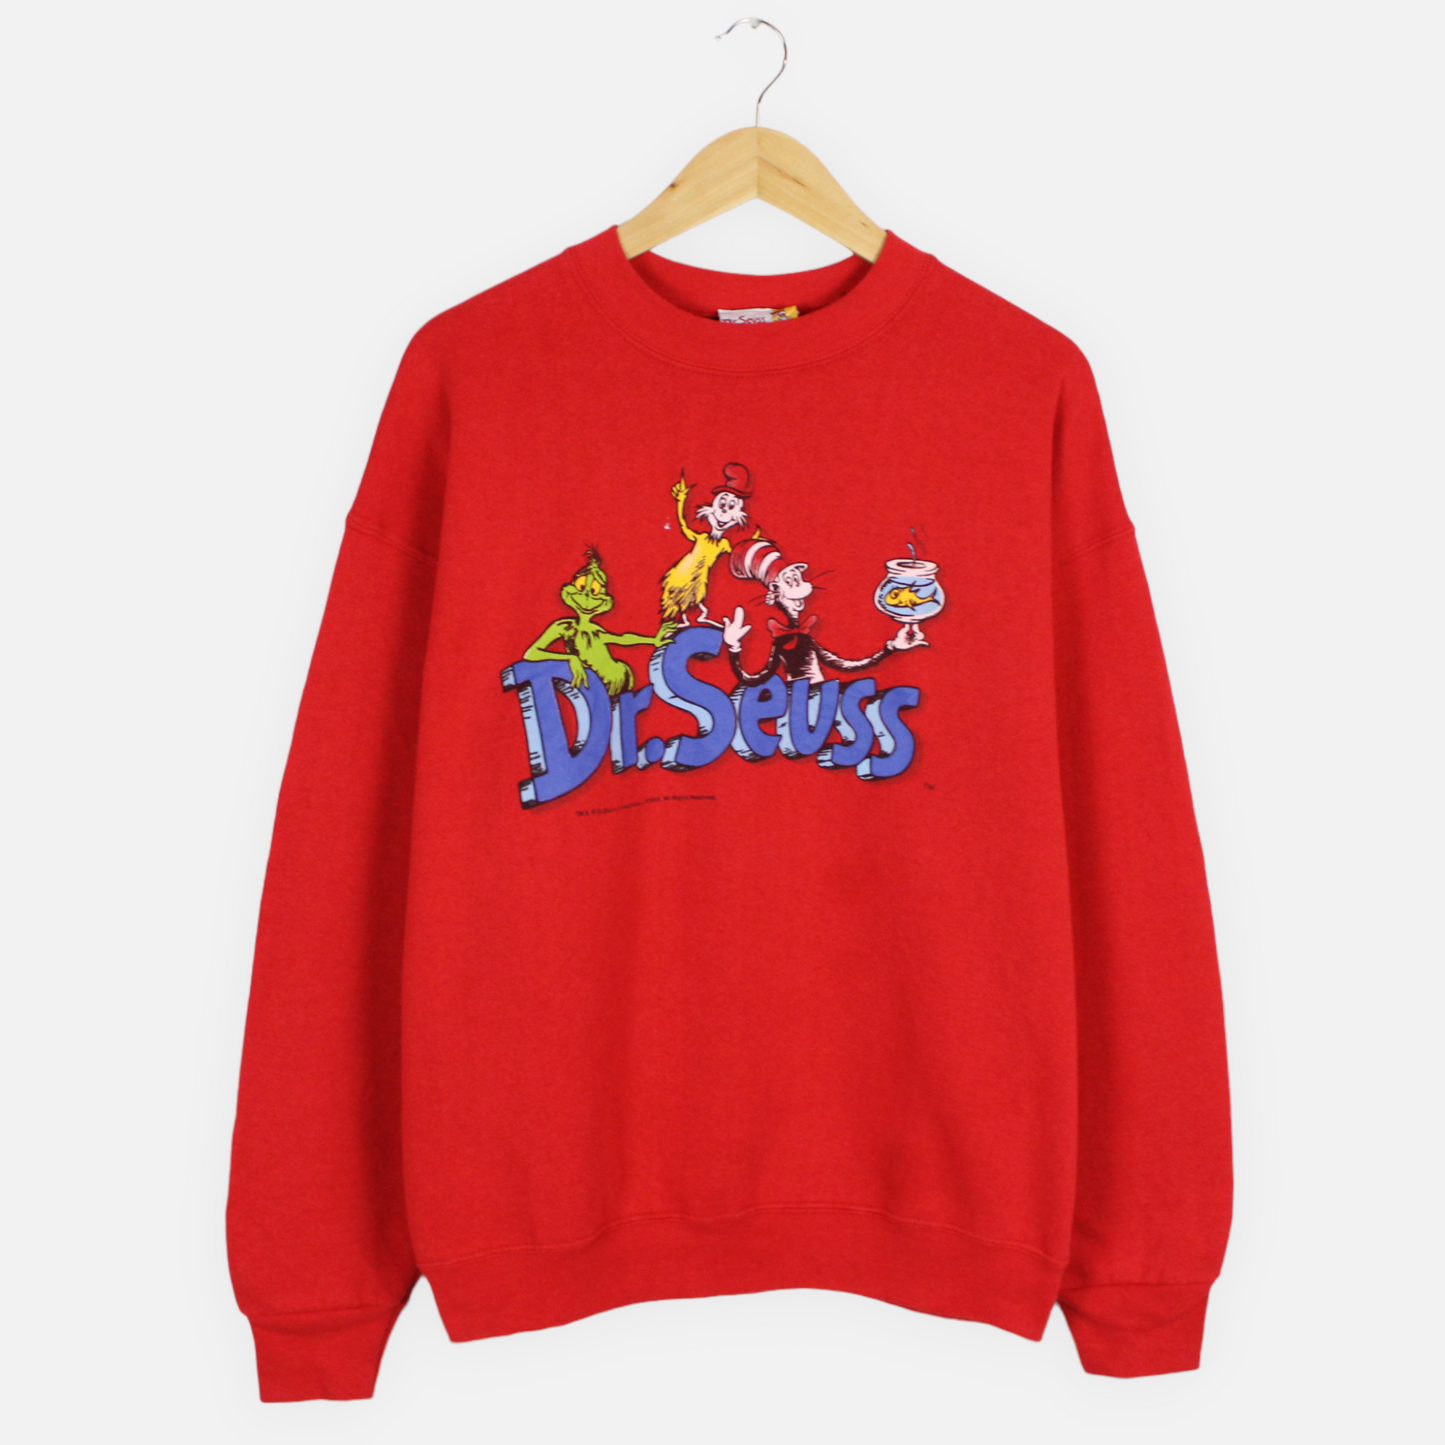 Vintage 1999 Dr Seuss Sweatshirt - L